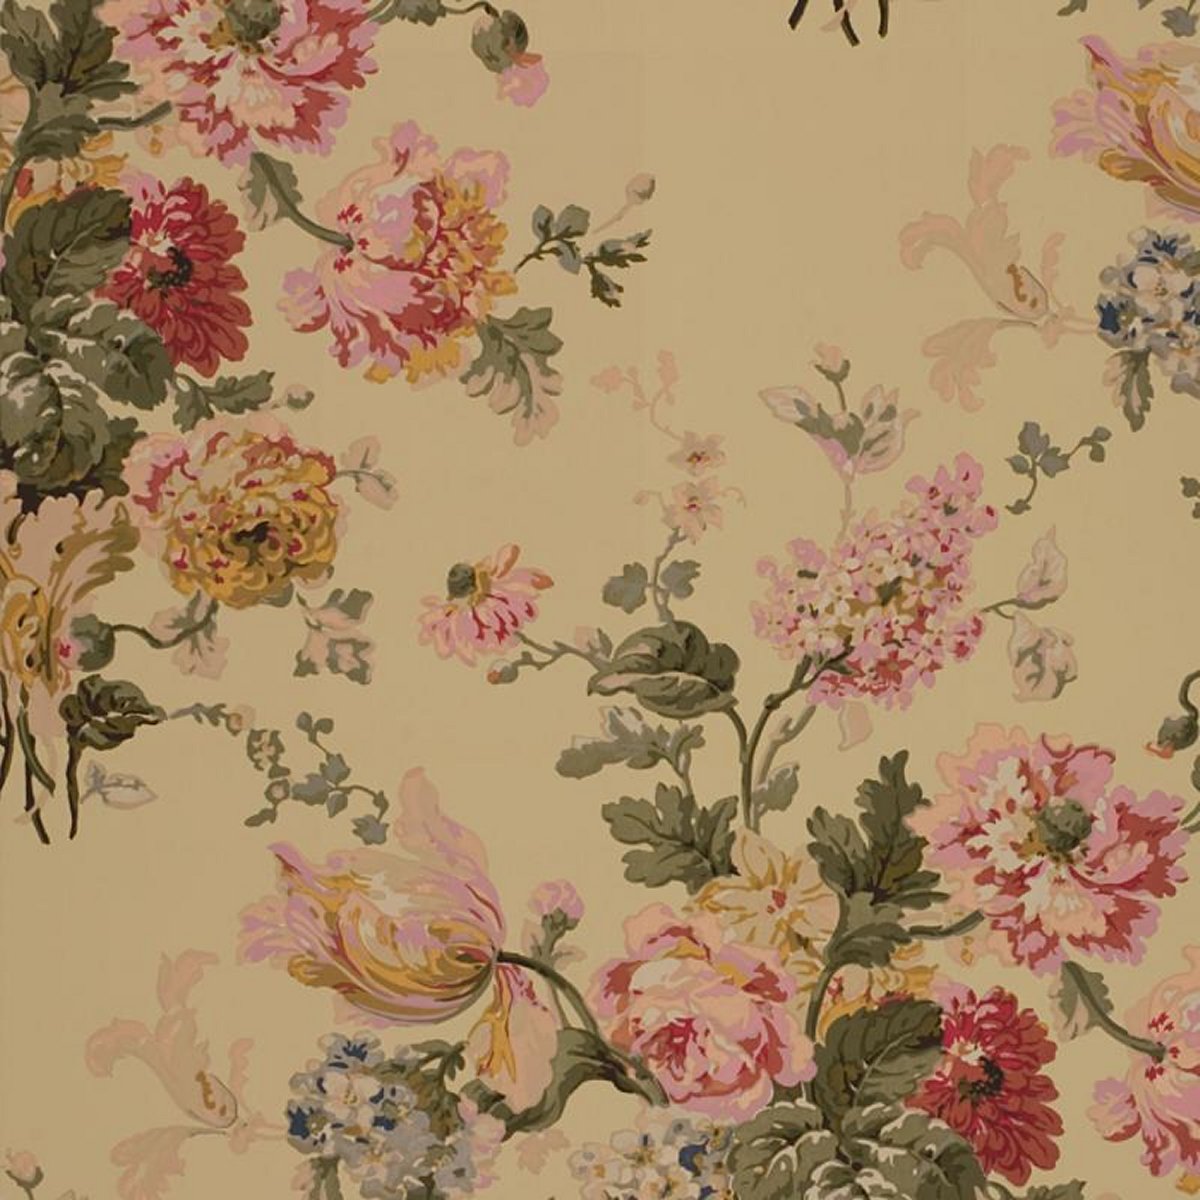 wallpaper motif bunga,floral design,pink,wallpaper,pattern,botany